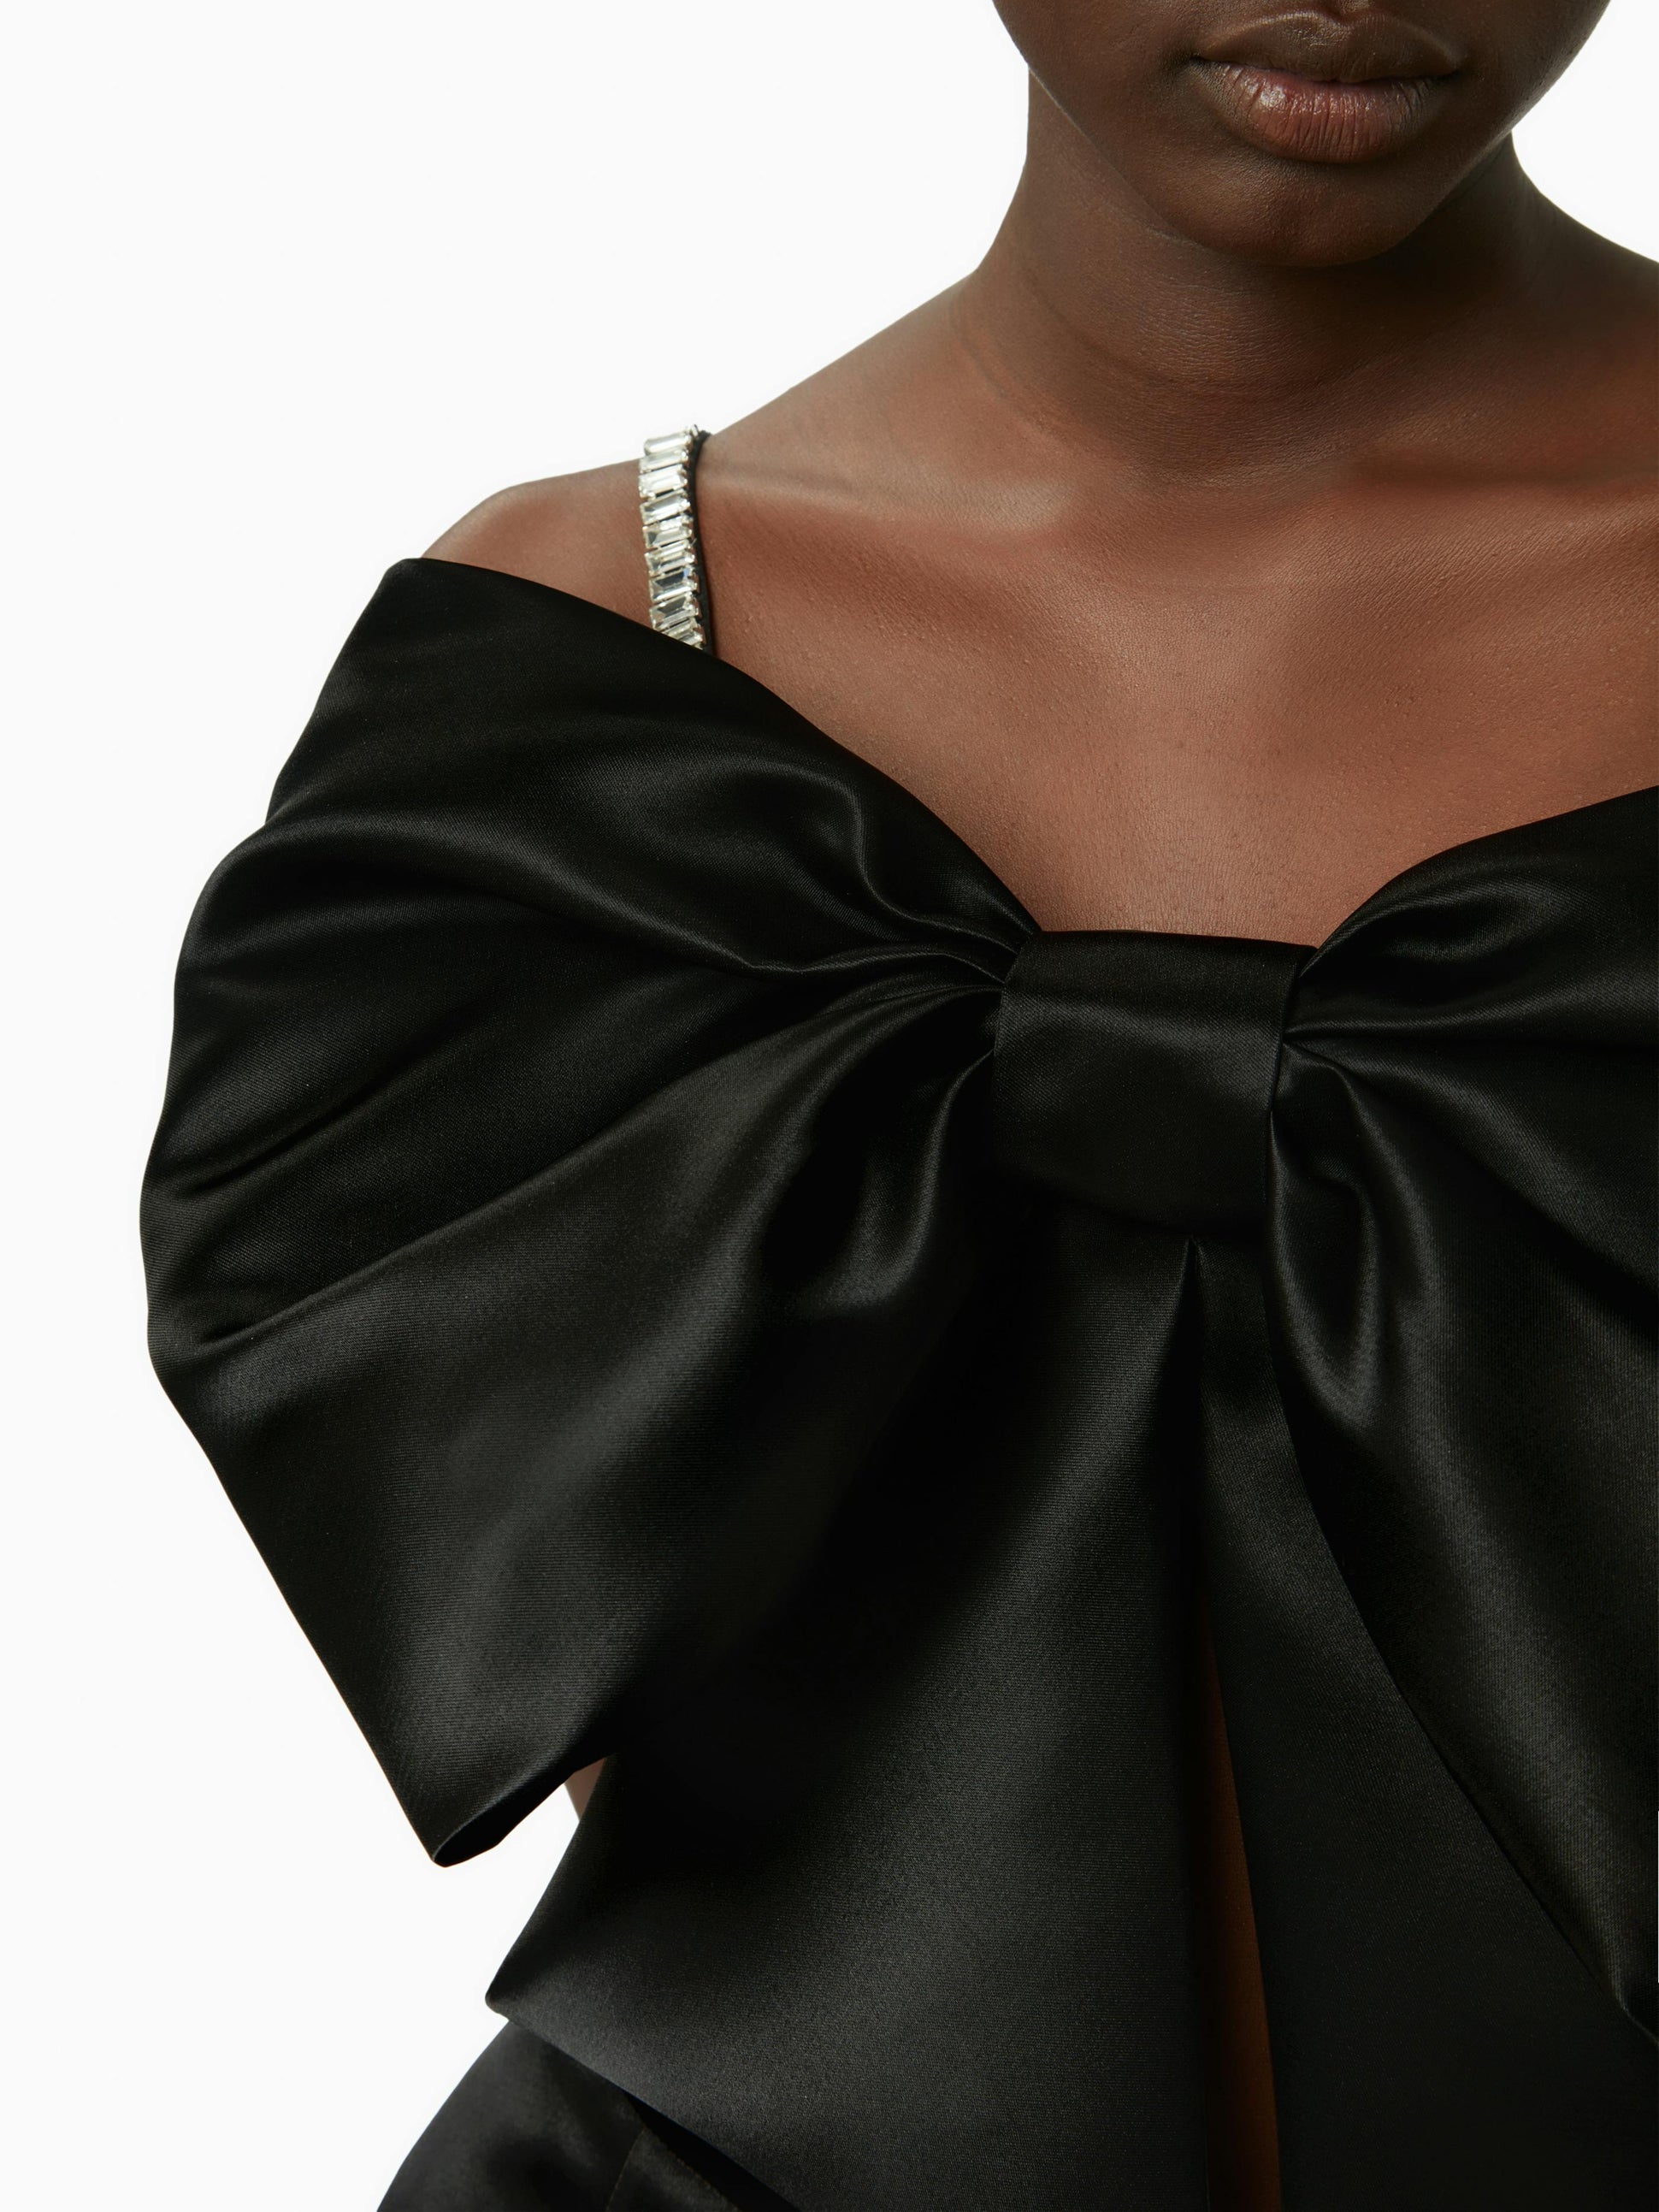 Satin bow bralette in black - Nina Ricci